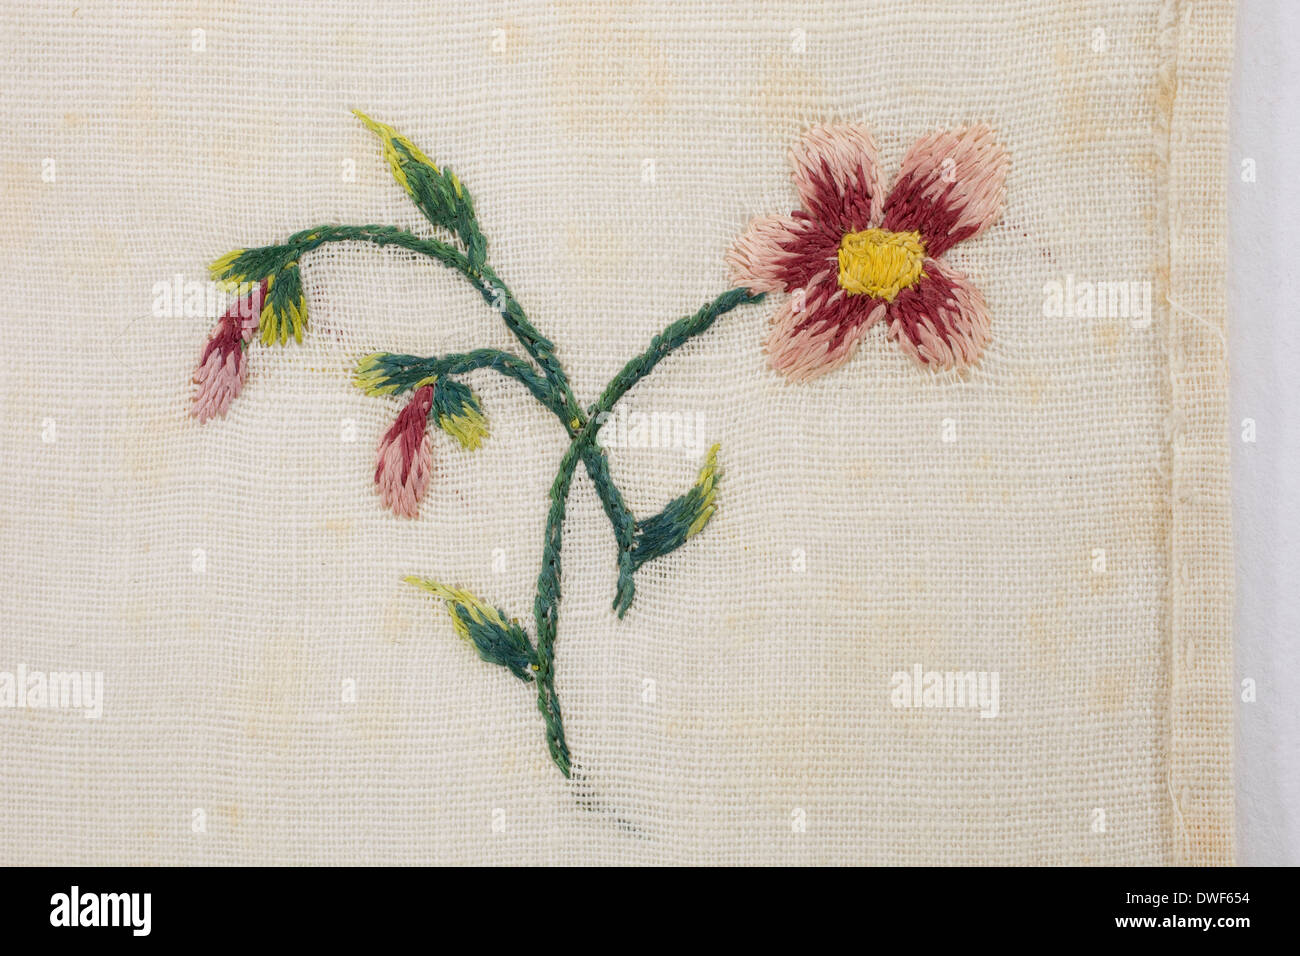 Pelouse en coton, brodé à la main, avec des fleurs sauvages et des motifs floraux sprig, datée entre 1750 et 1790 Banque D'Images